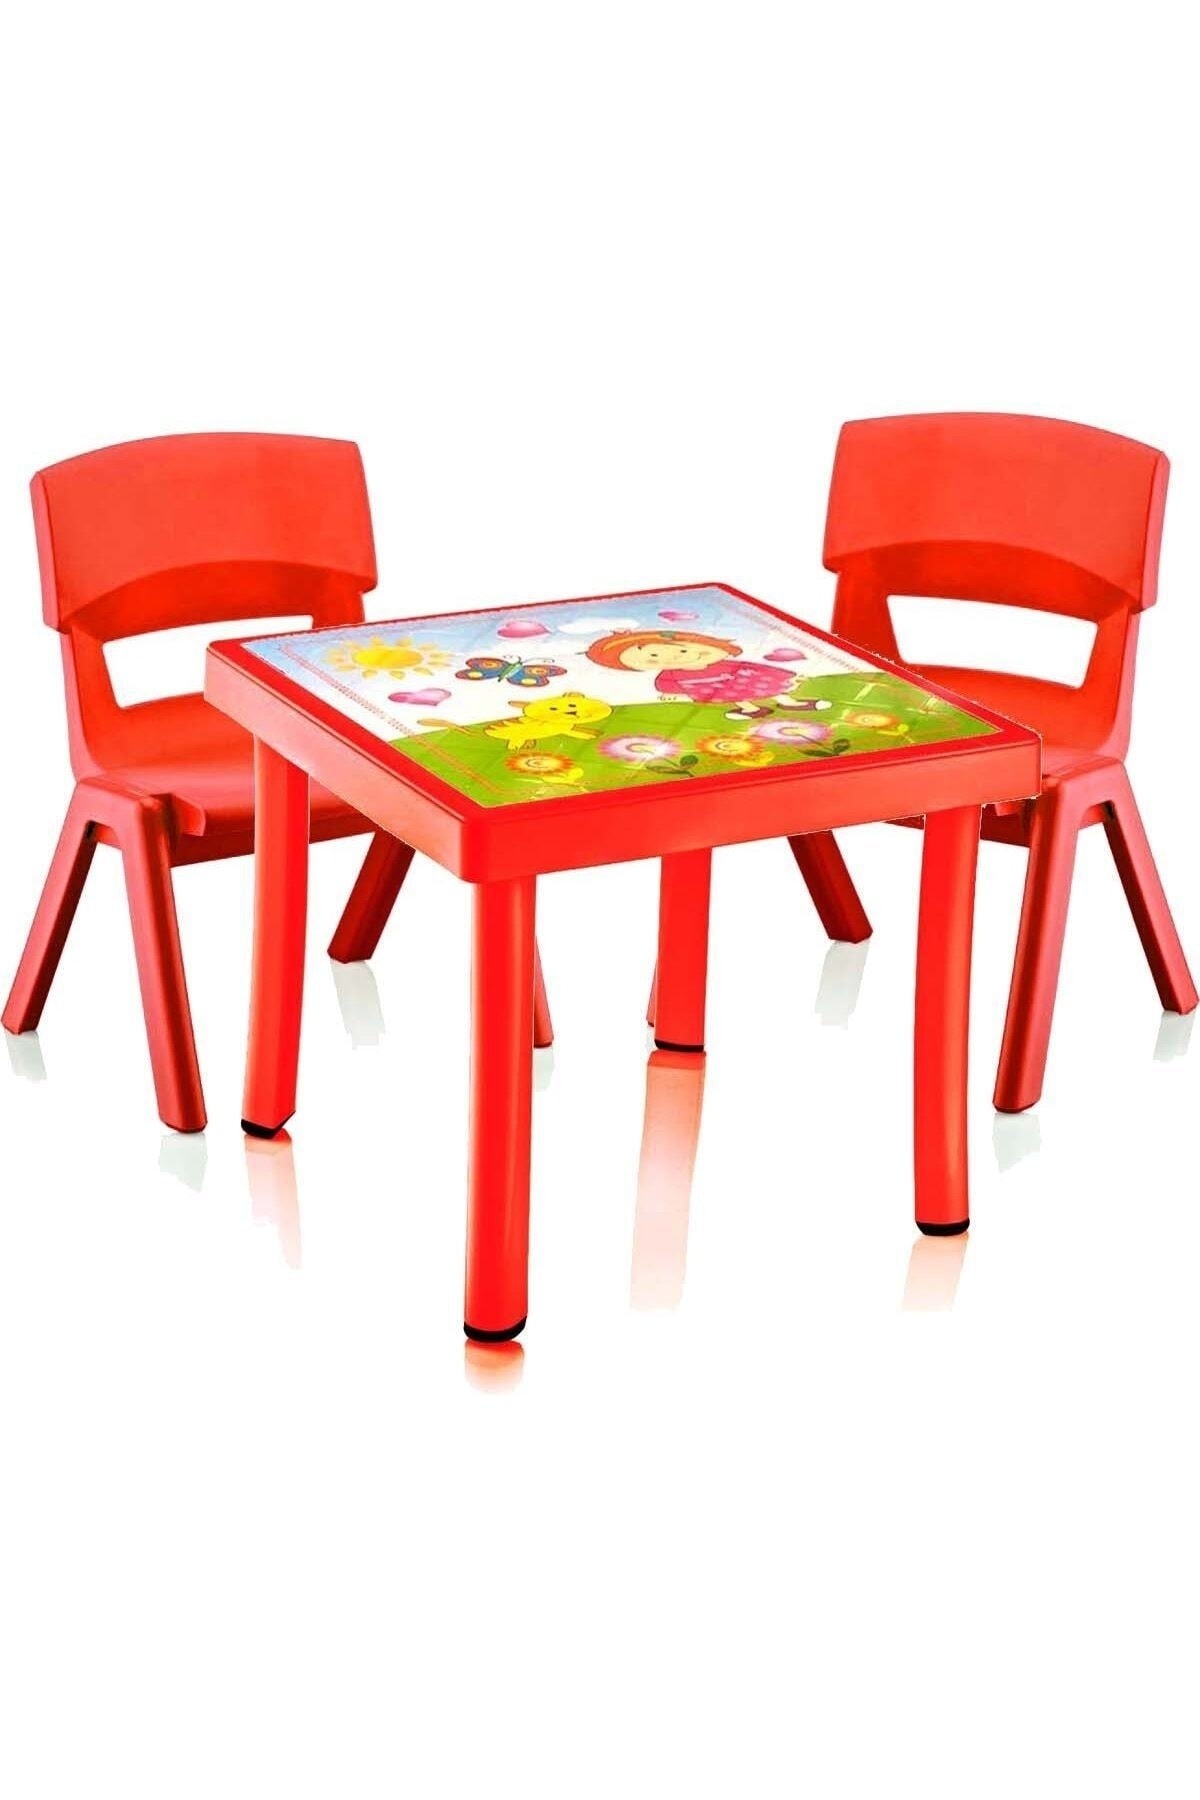 Albayraks Turizm Çocuk Çalışma Masası Iki Sandalye Seti Oyun Ve Yemek Masası Tse Onaylı Pb003-2